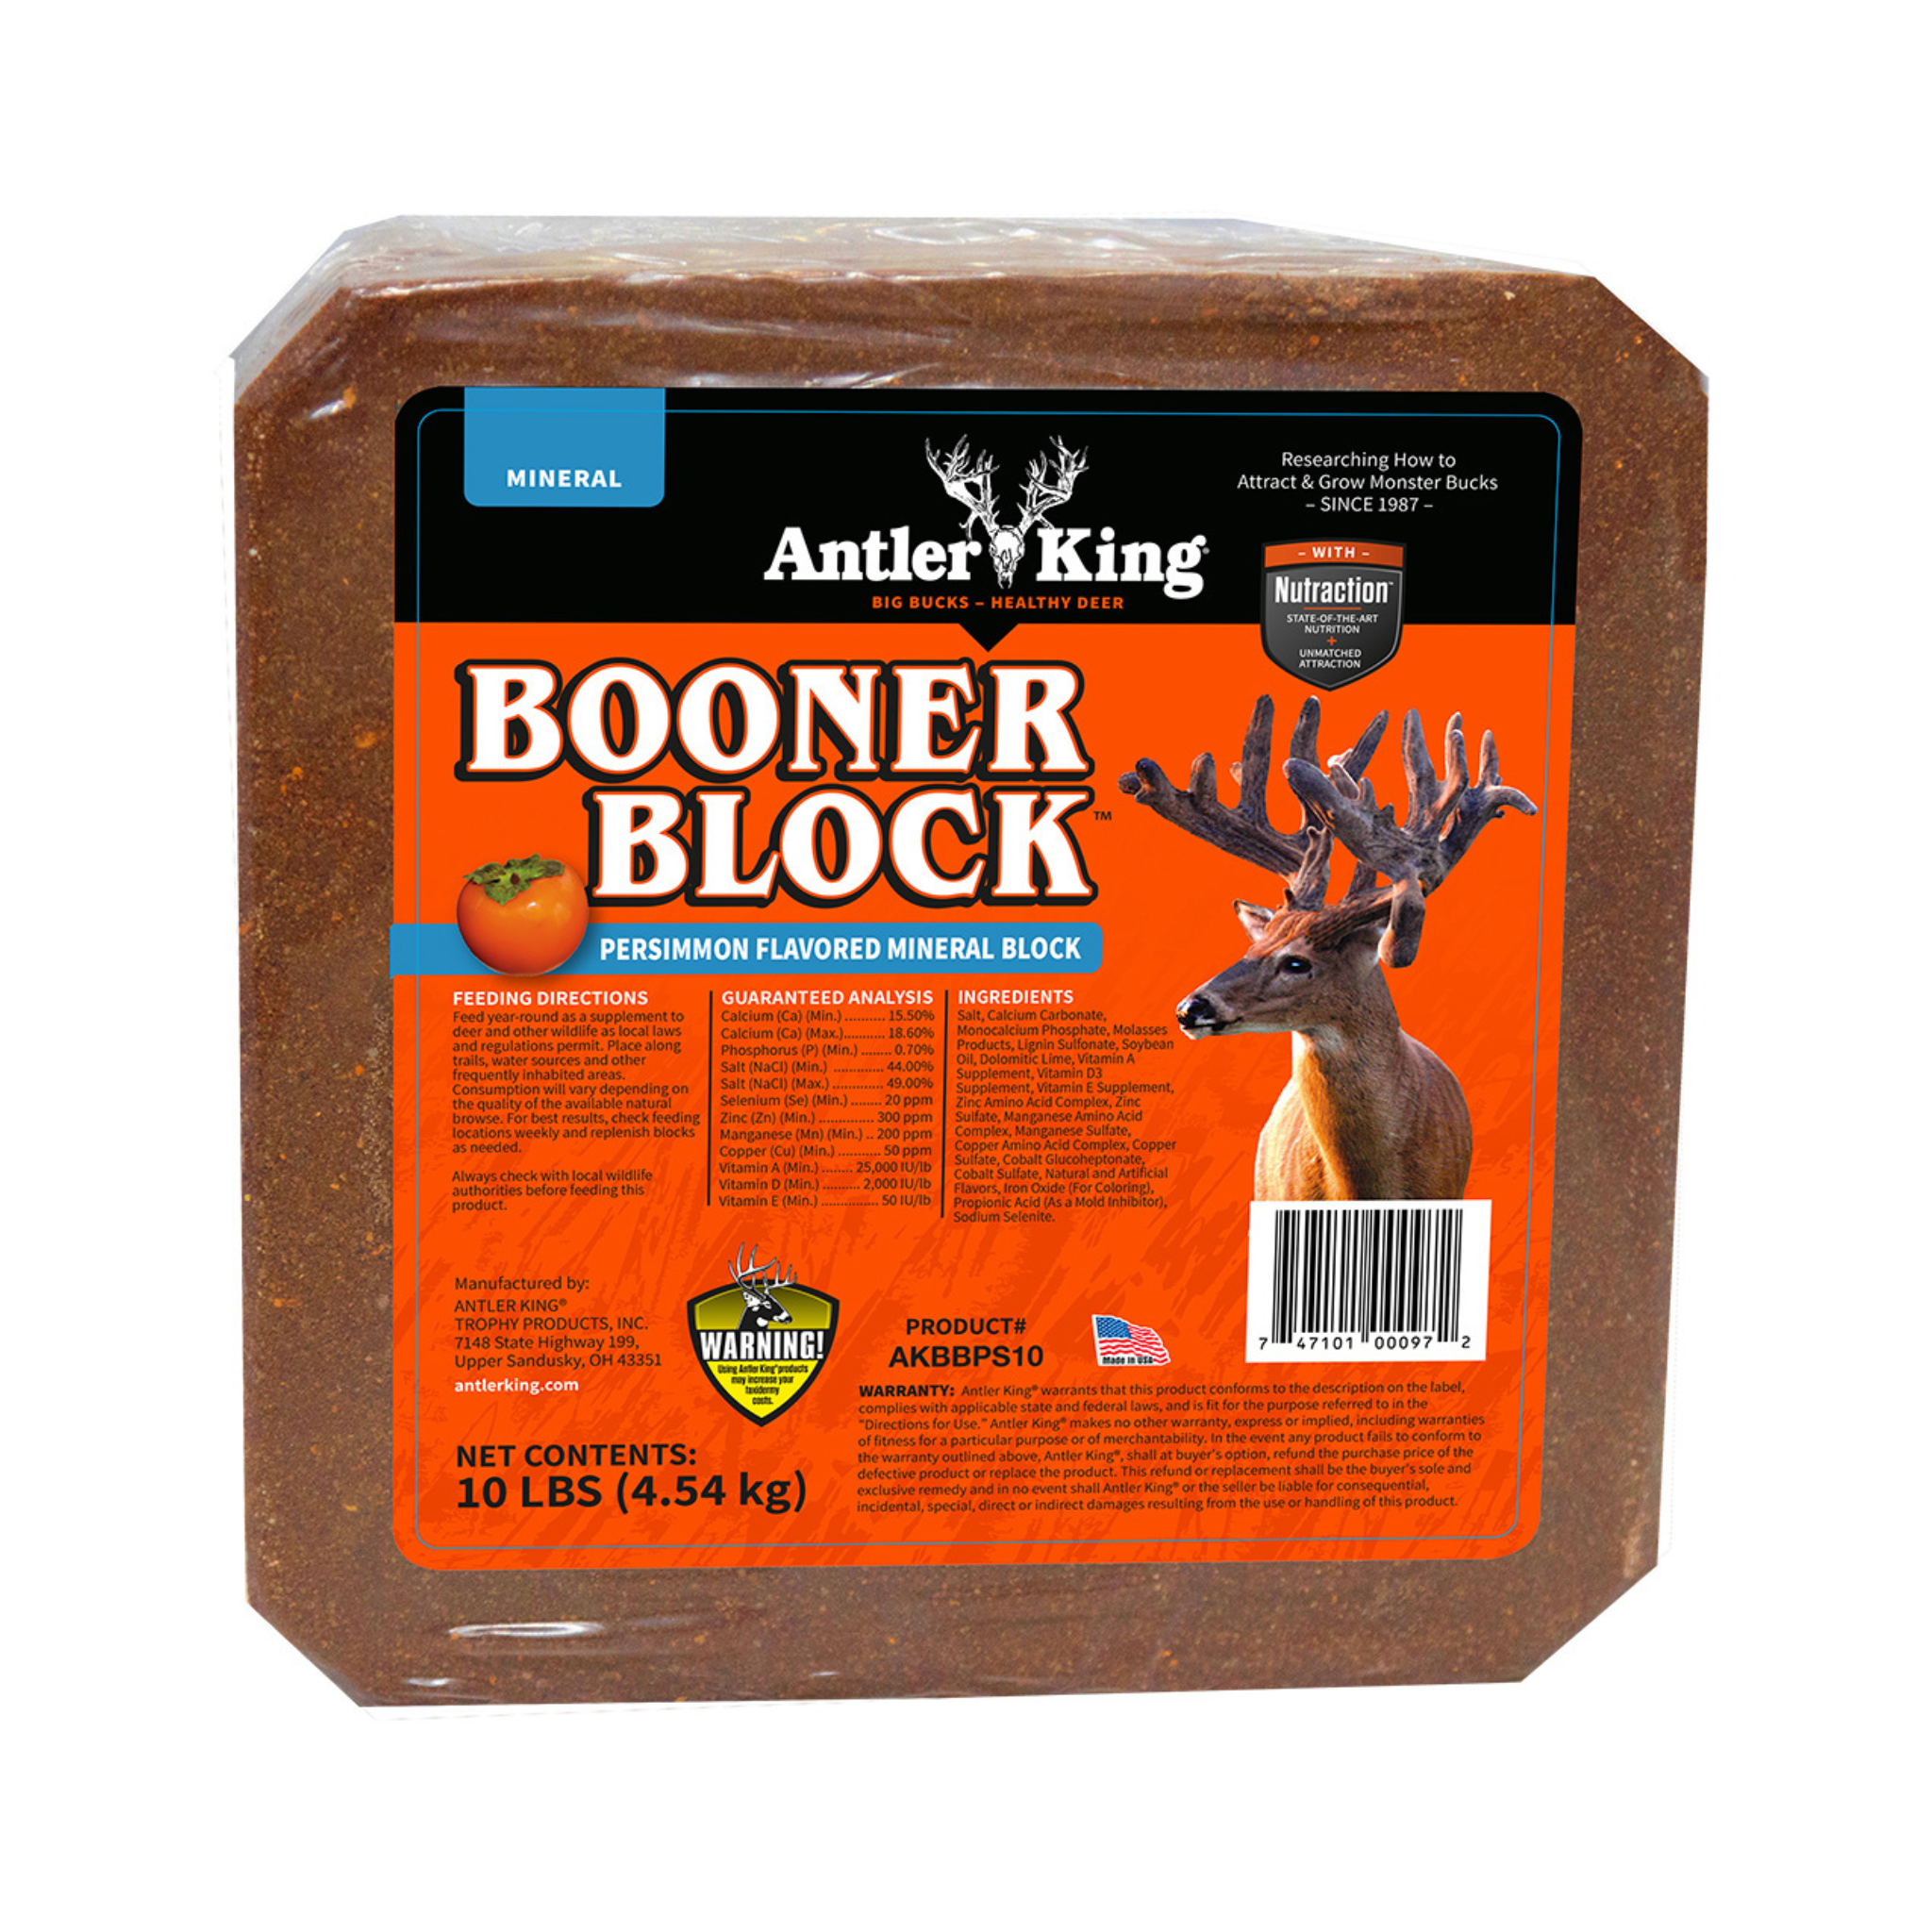 Antler King Booner Block Deer Mineral